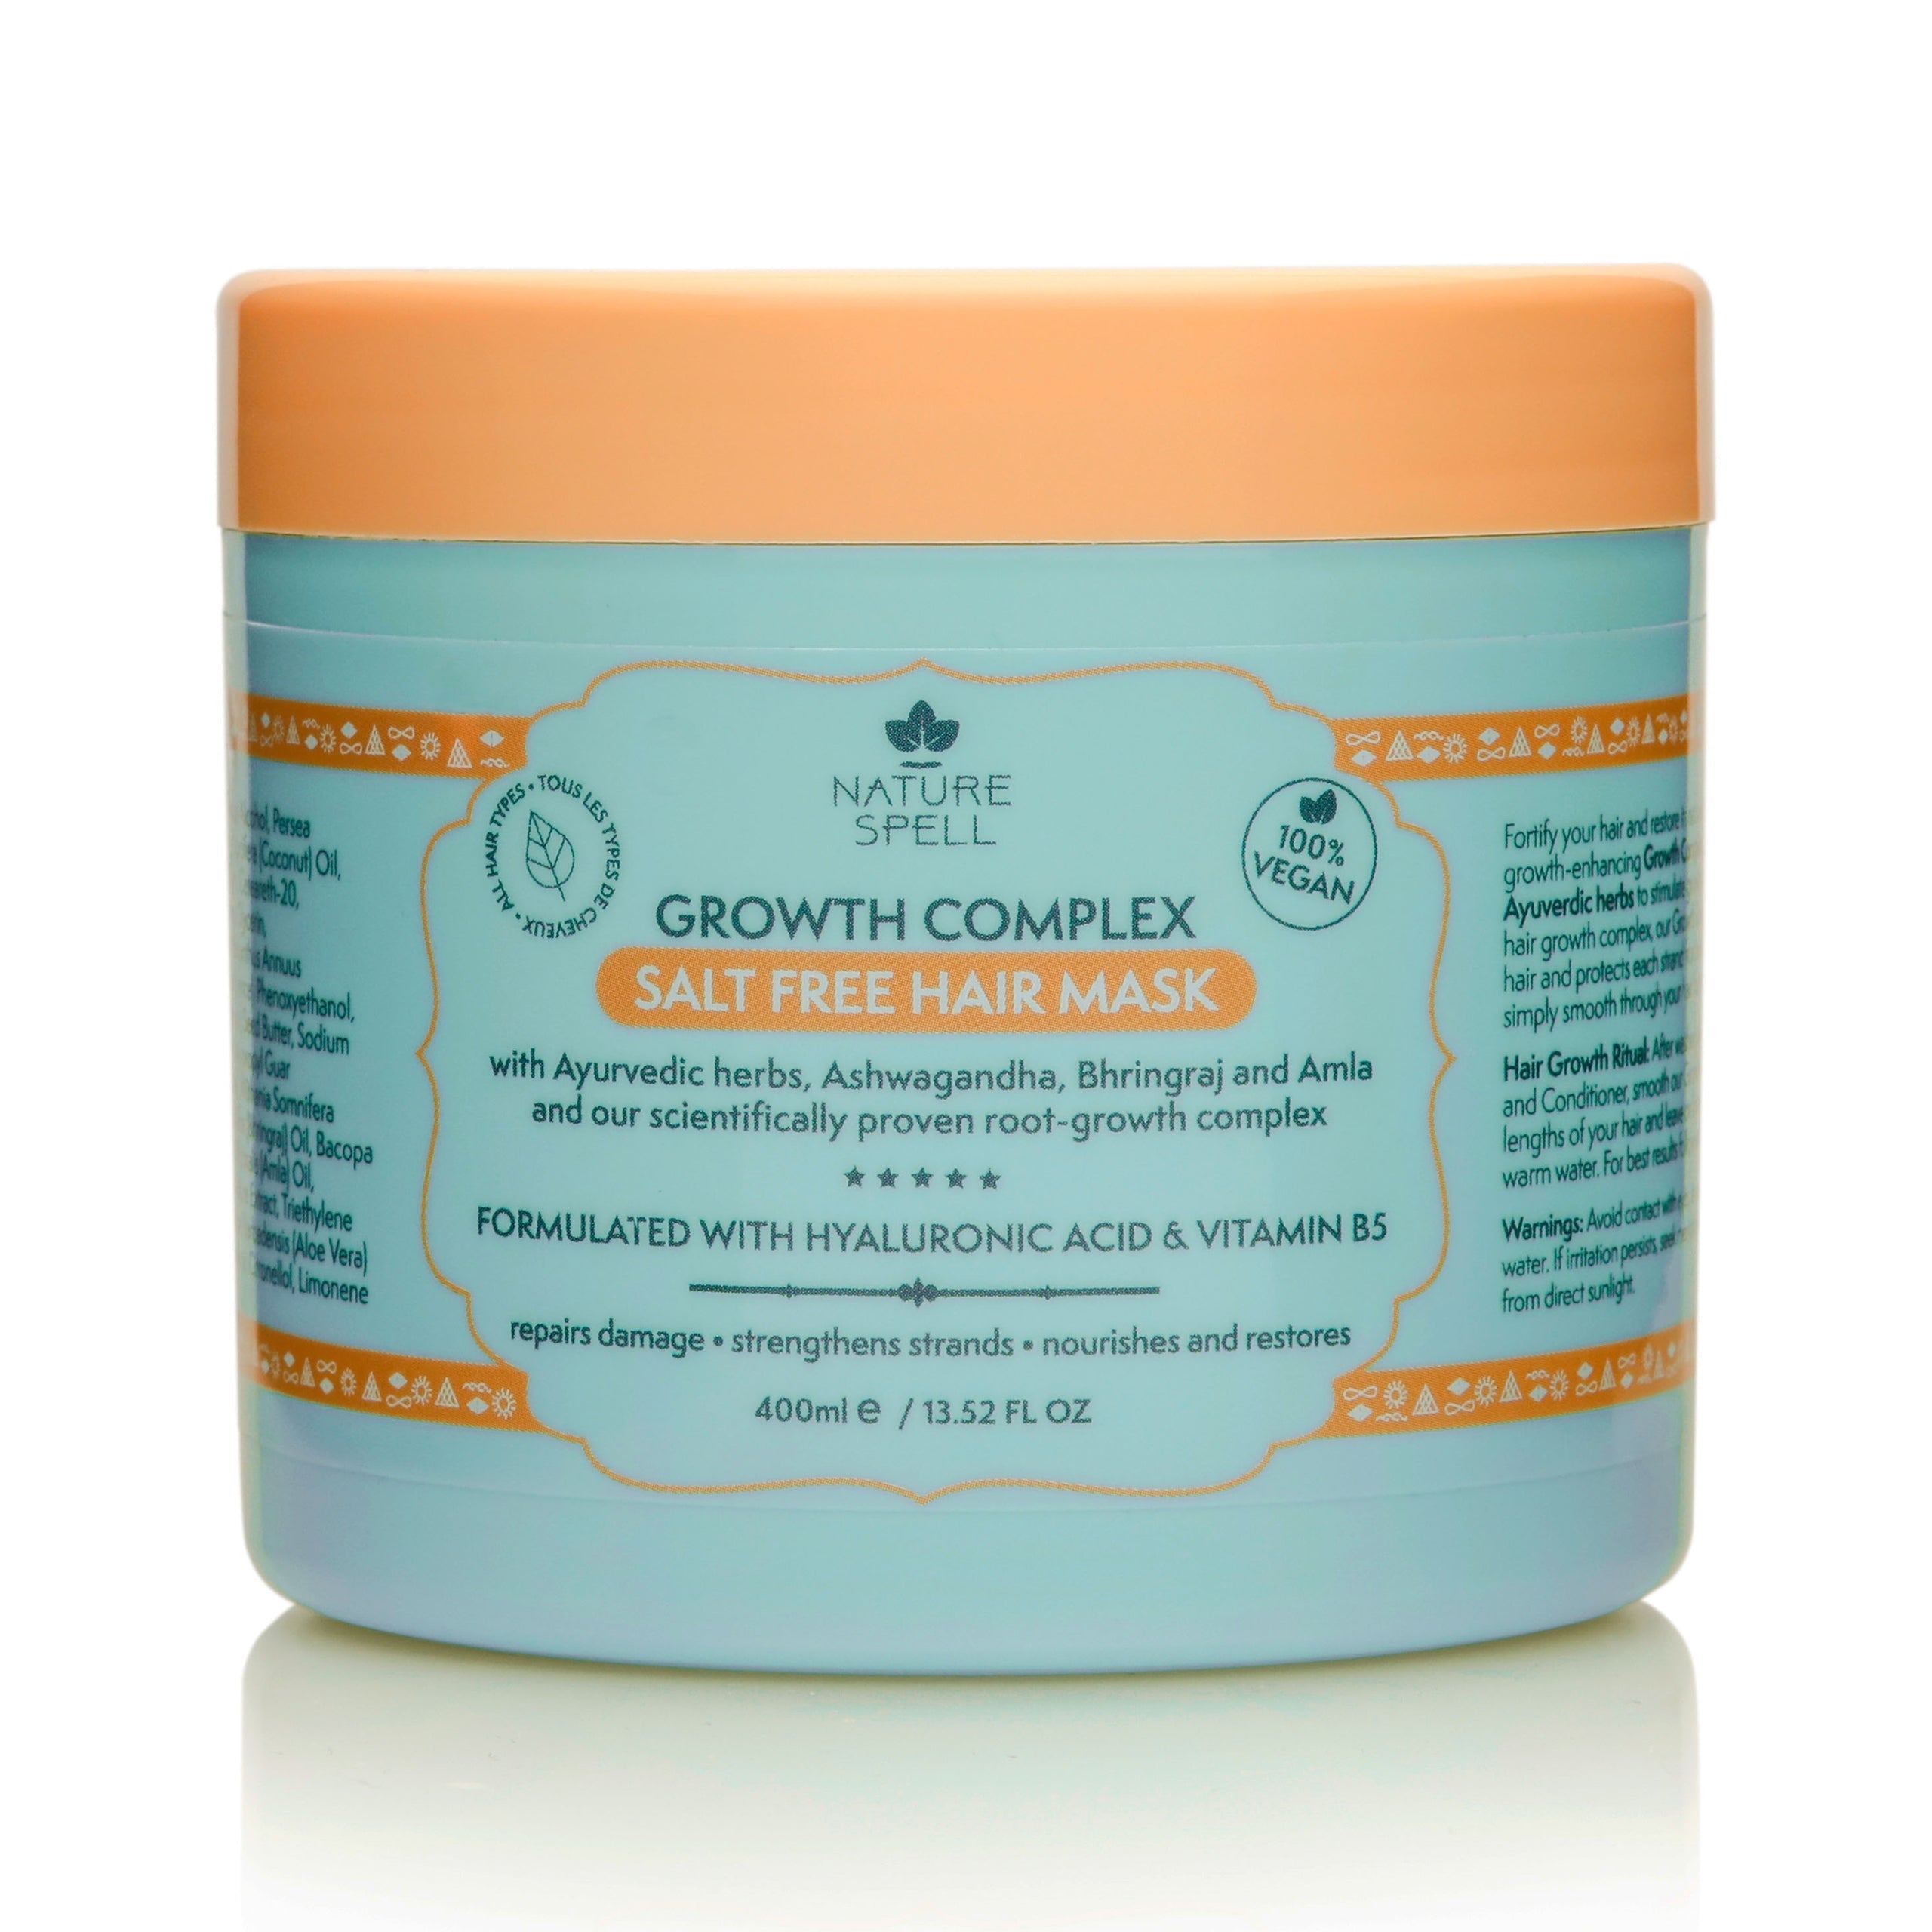 Growth Complex Hair Growth Set - Shampoo, Conditioner, Hair Mask, Hair Oil